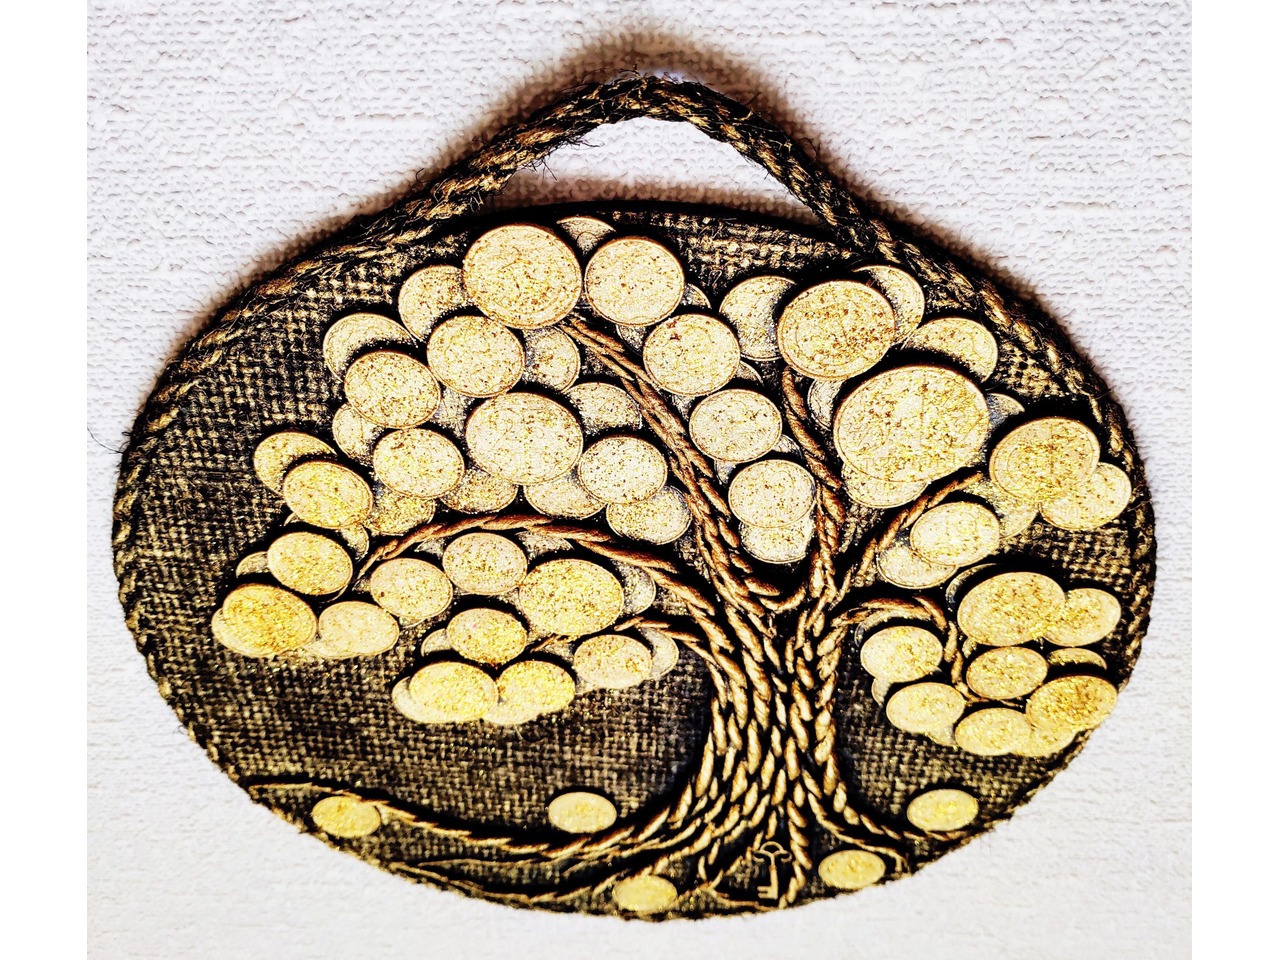 Как сделать красивое панно Денежное дерево из монет своими руками